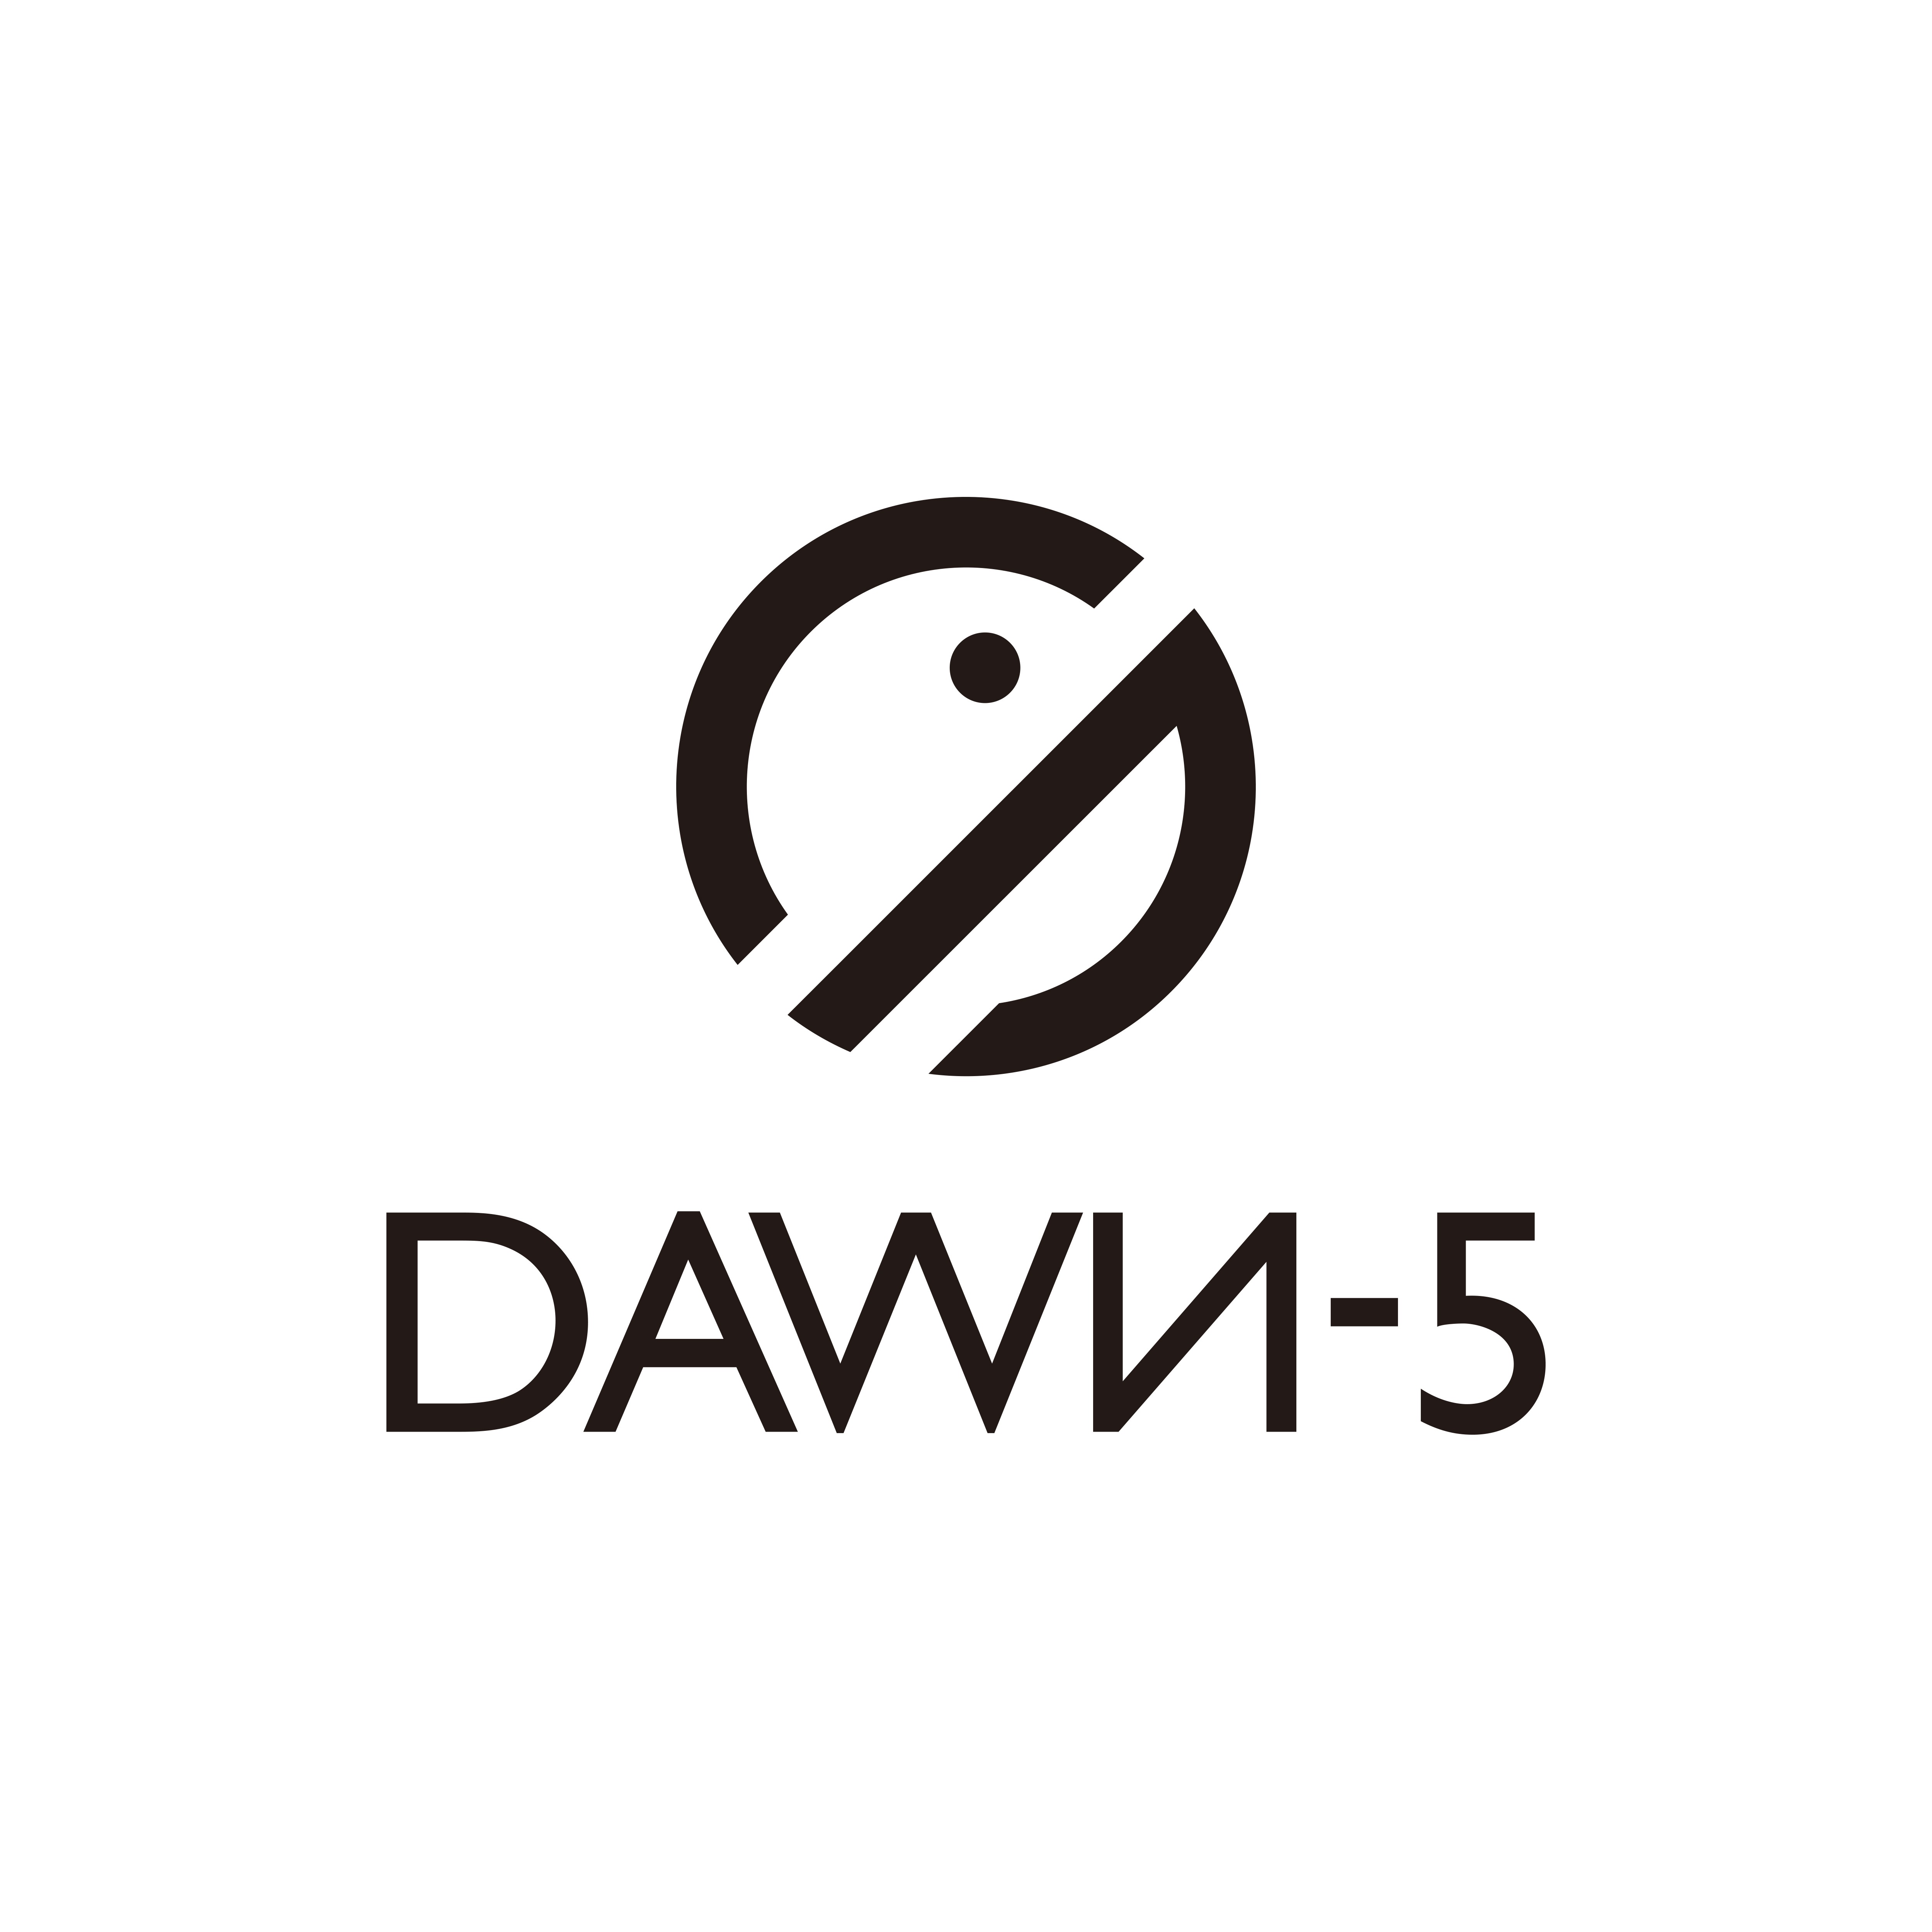 株式会社DAWN-5の株式会社DAWN-5サービス